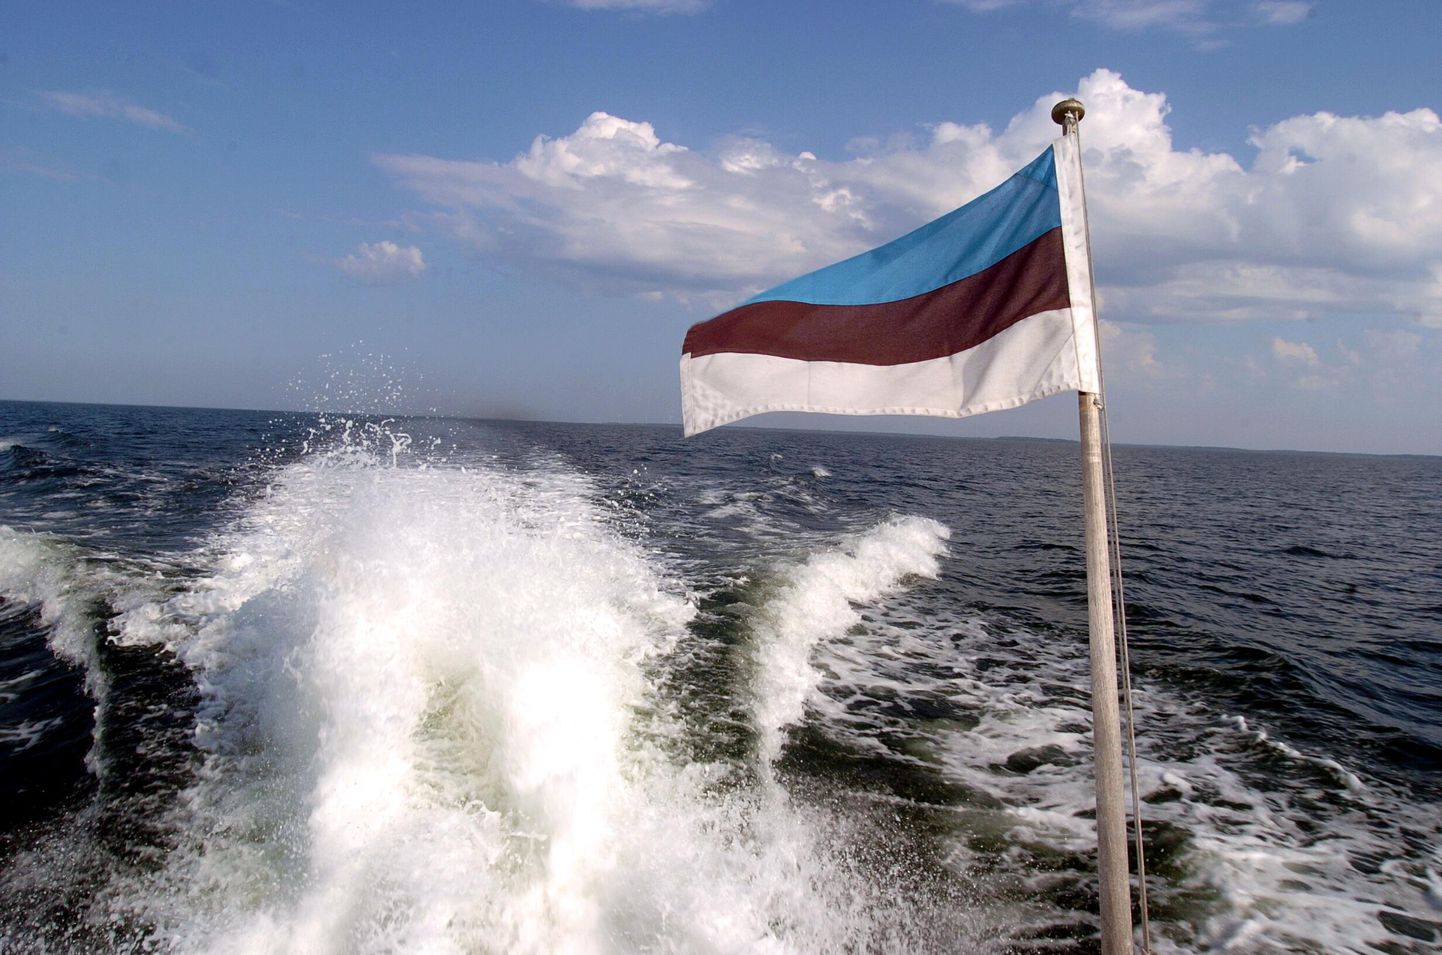 Valitsuse majandusarengu komisjon sai ülevaate meremajanduse kitsaskohtadest, mis takistavad laevade Eesti lipu alla tulemist.